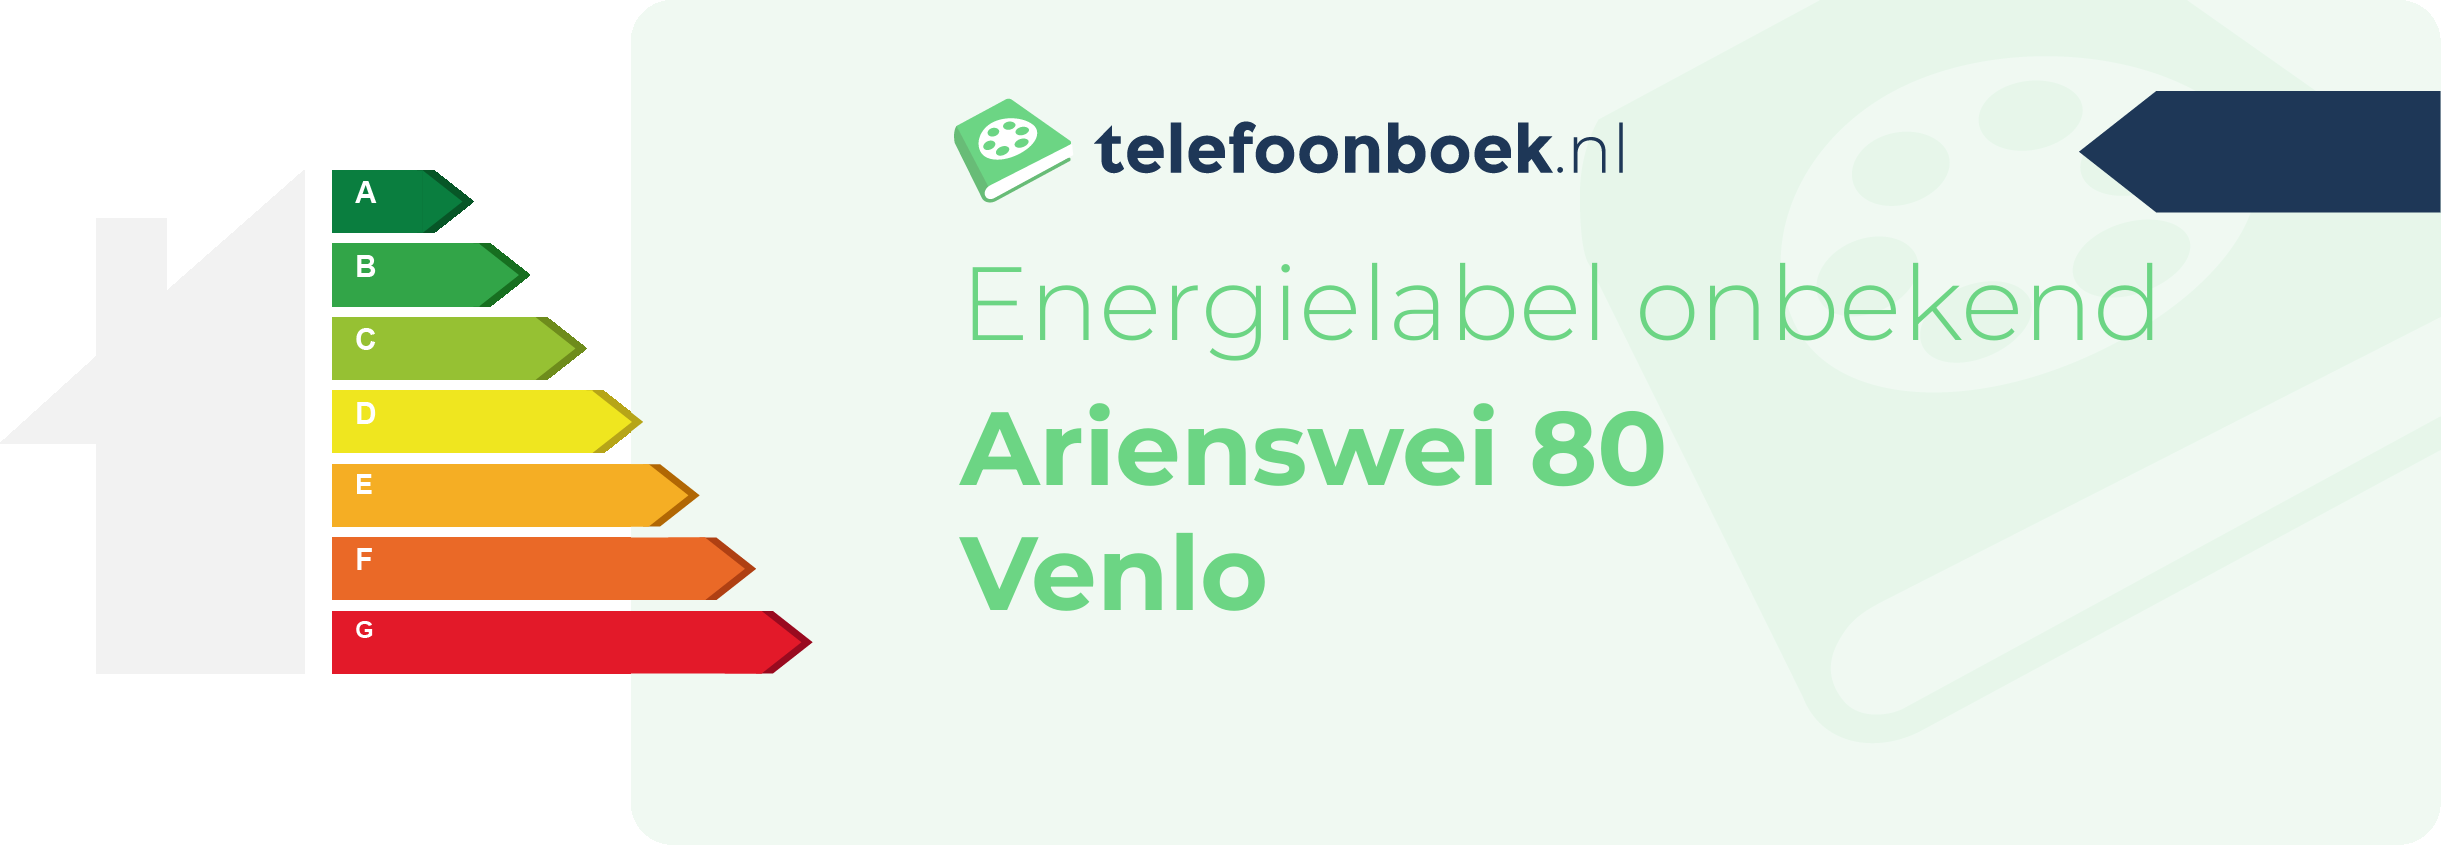 Energielabel Arienswei 80 Venlo